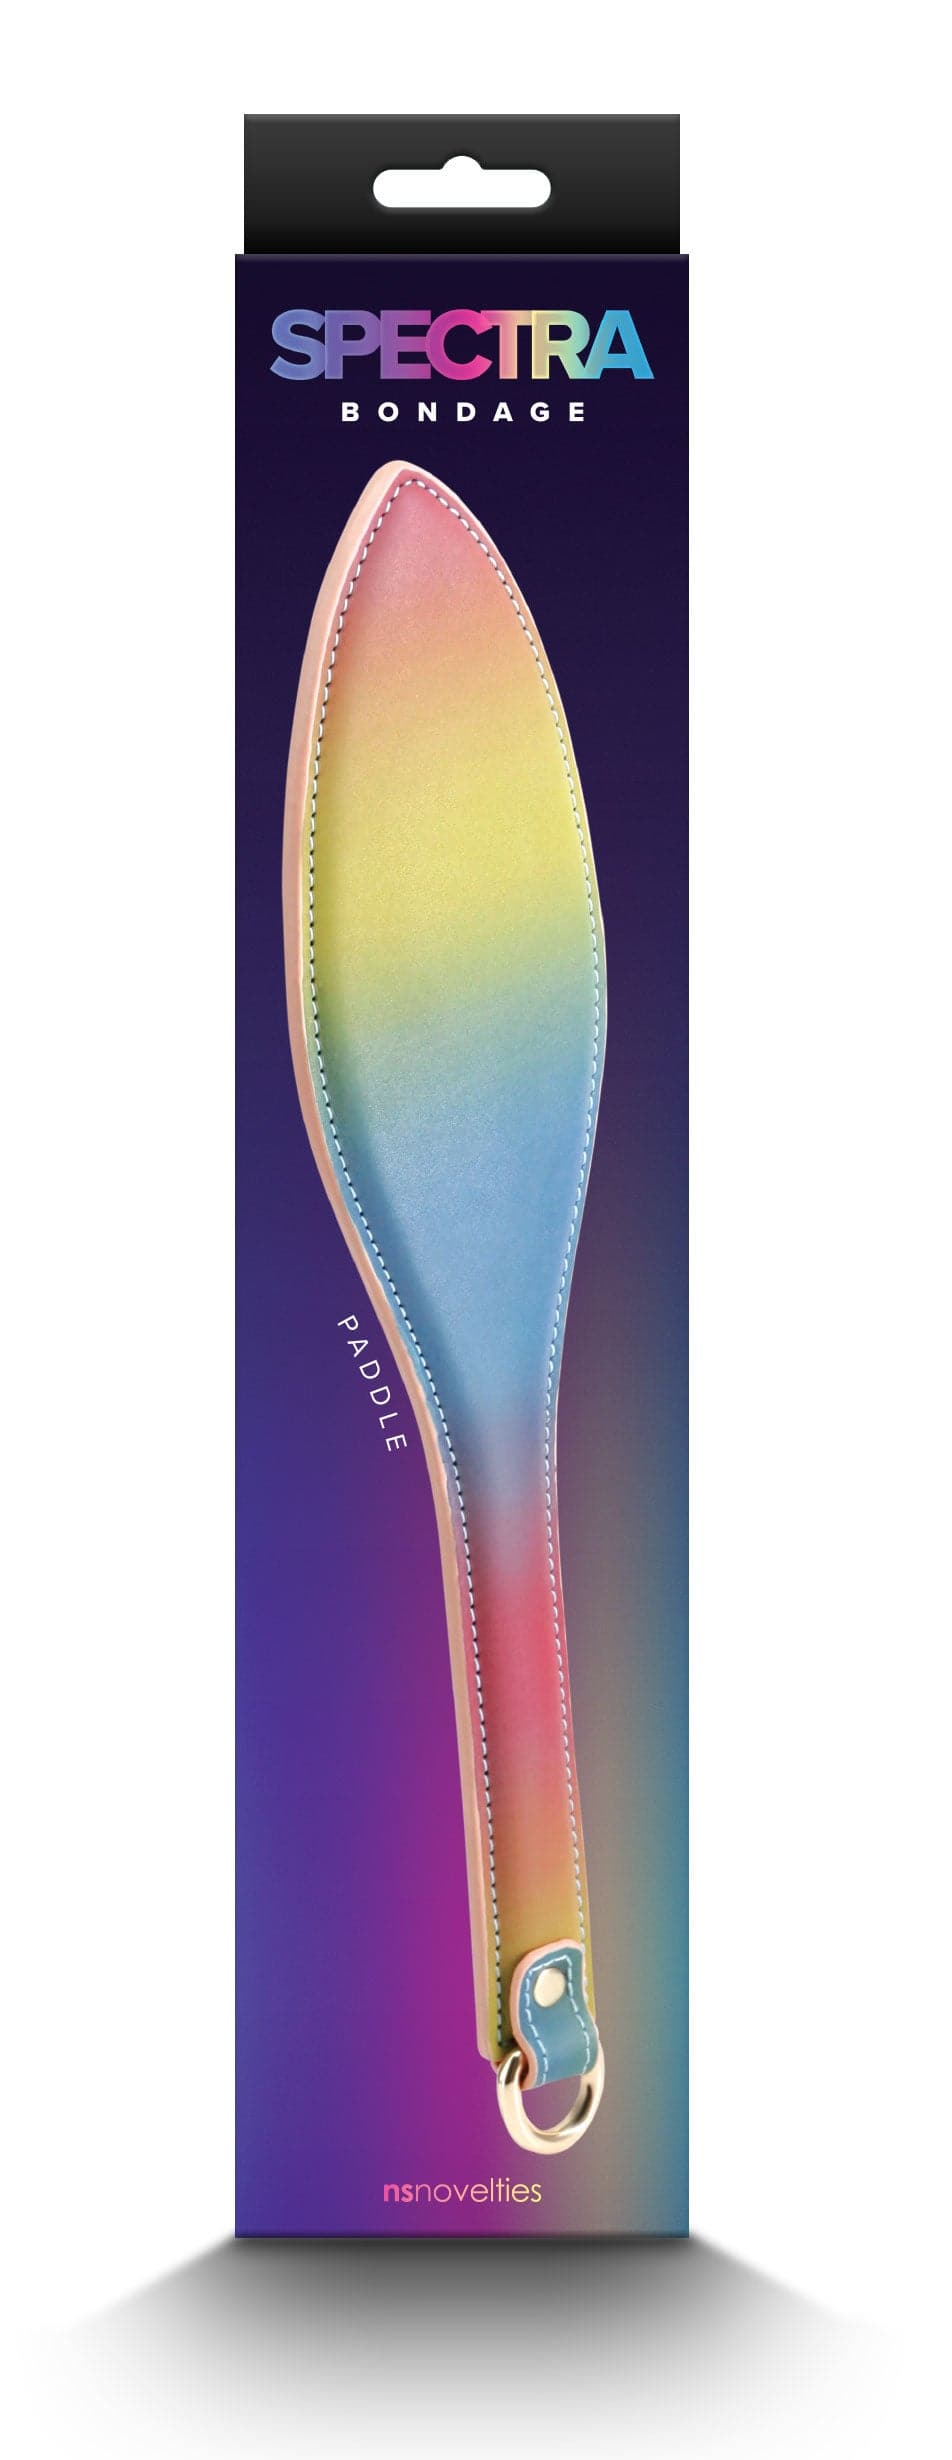 spectra bondage paddle rainbow